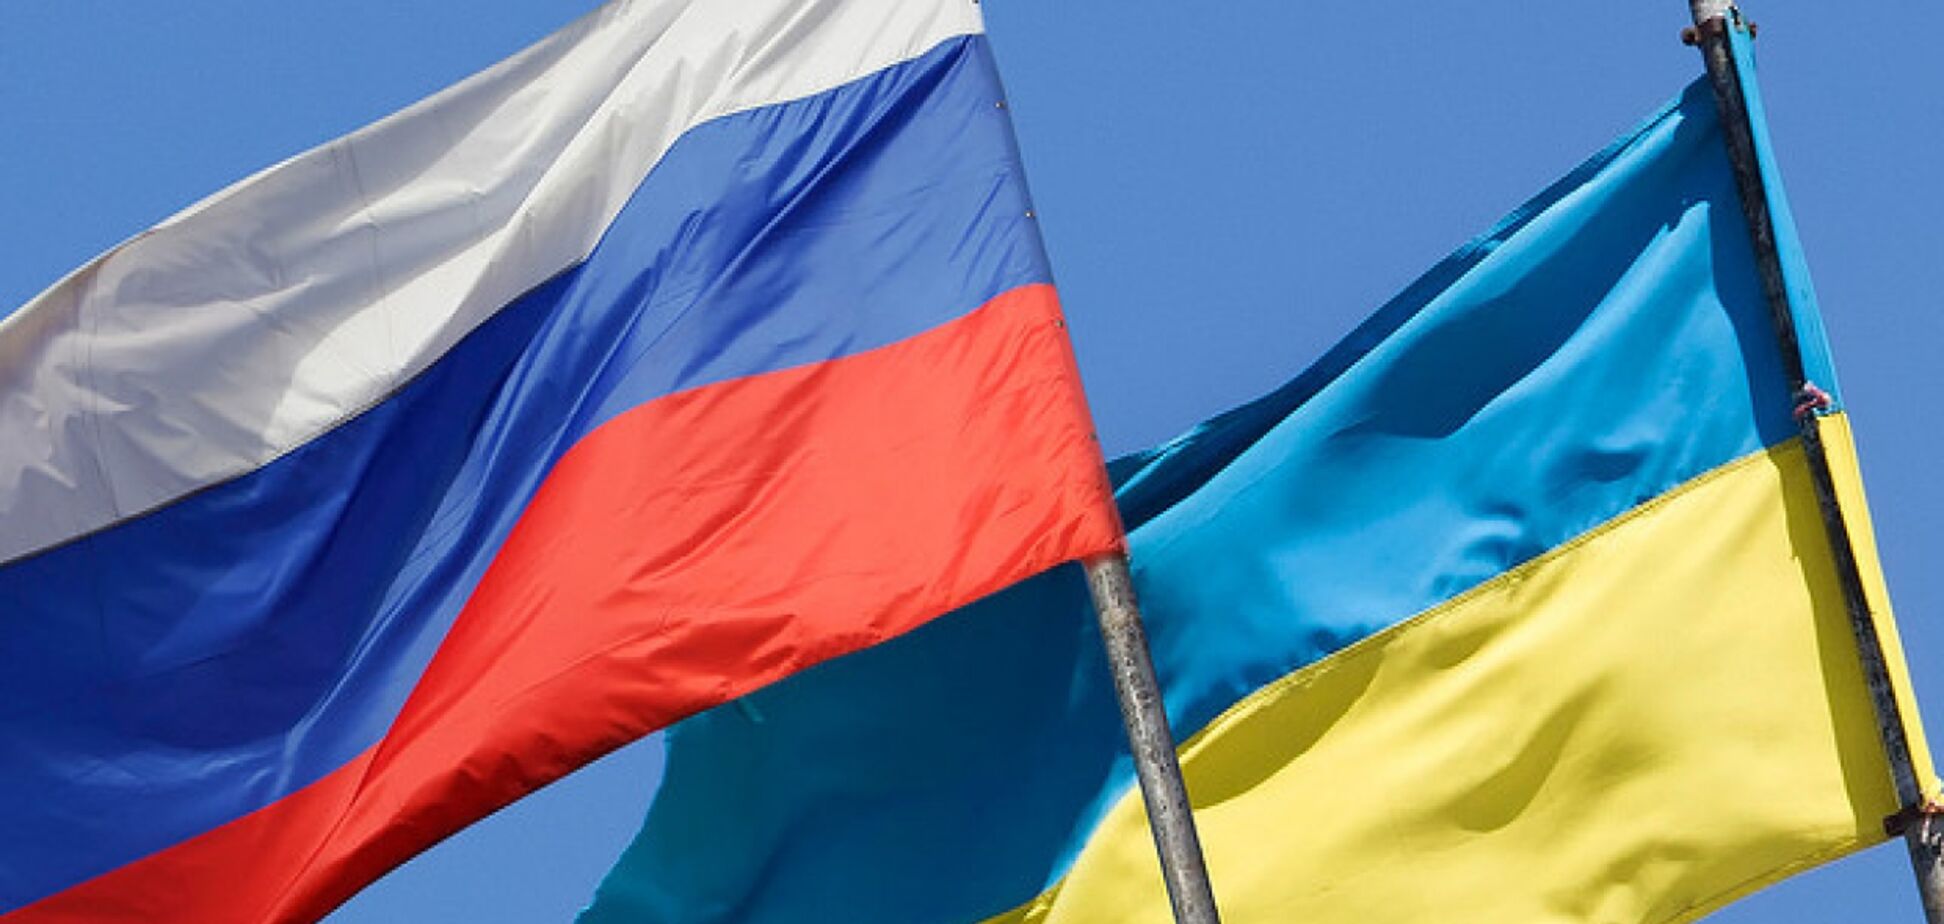 Більшість росіян сподіваються на нормалізацію відносин з Україною